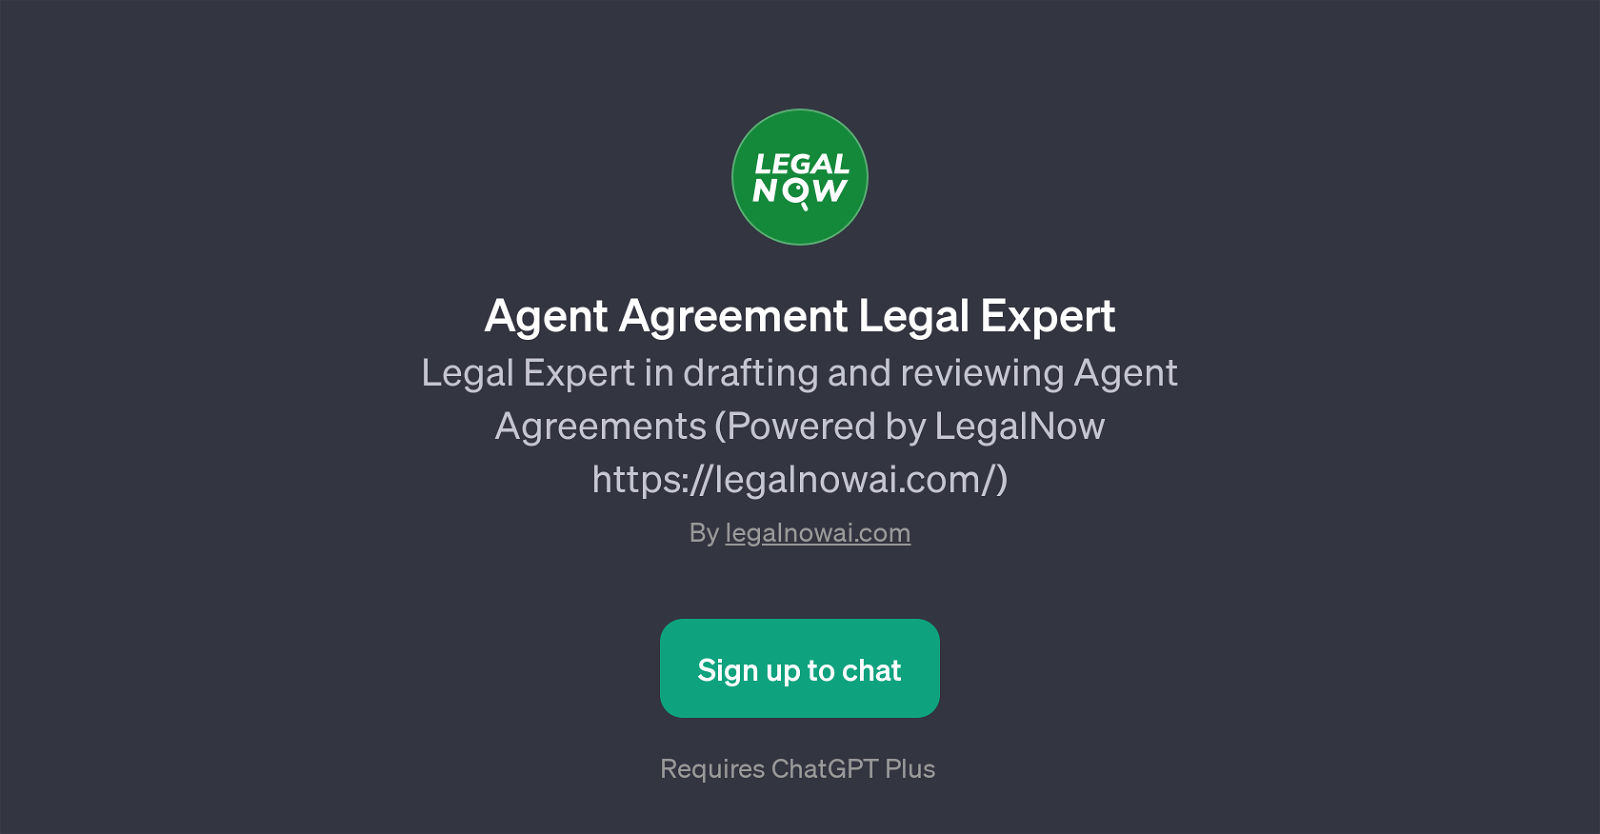 Agent Agreement Legal Expert website